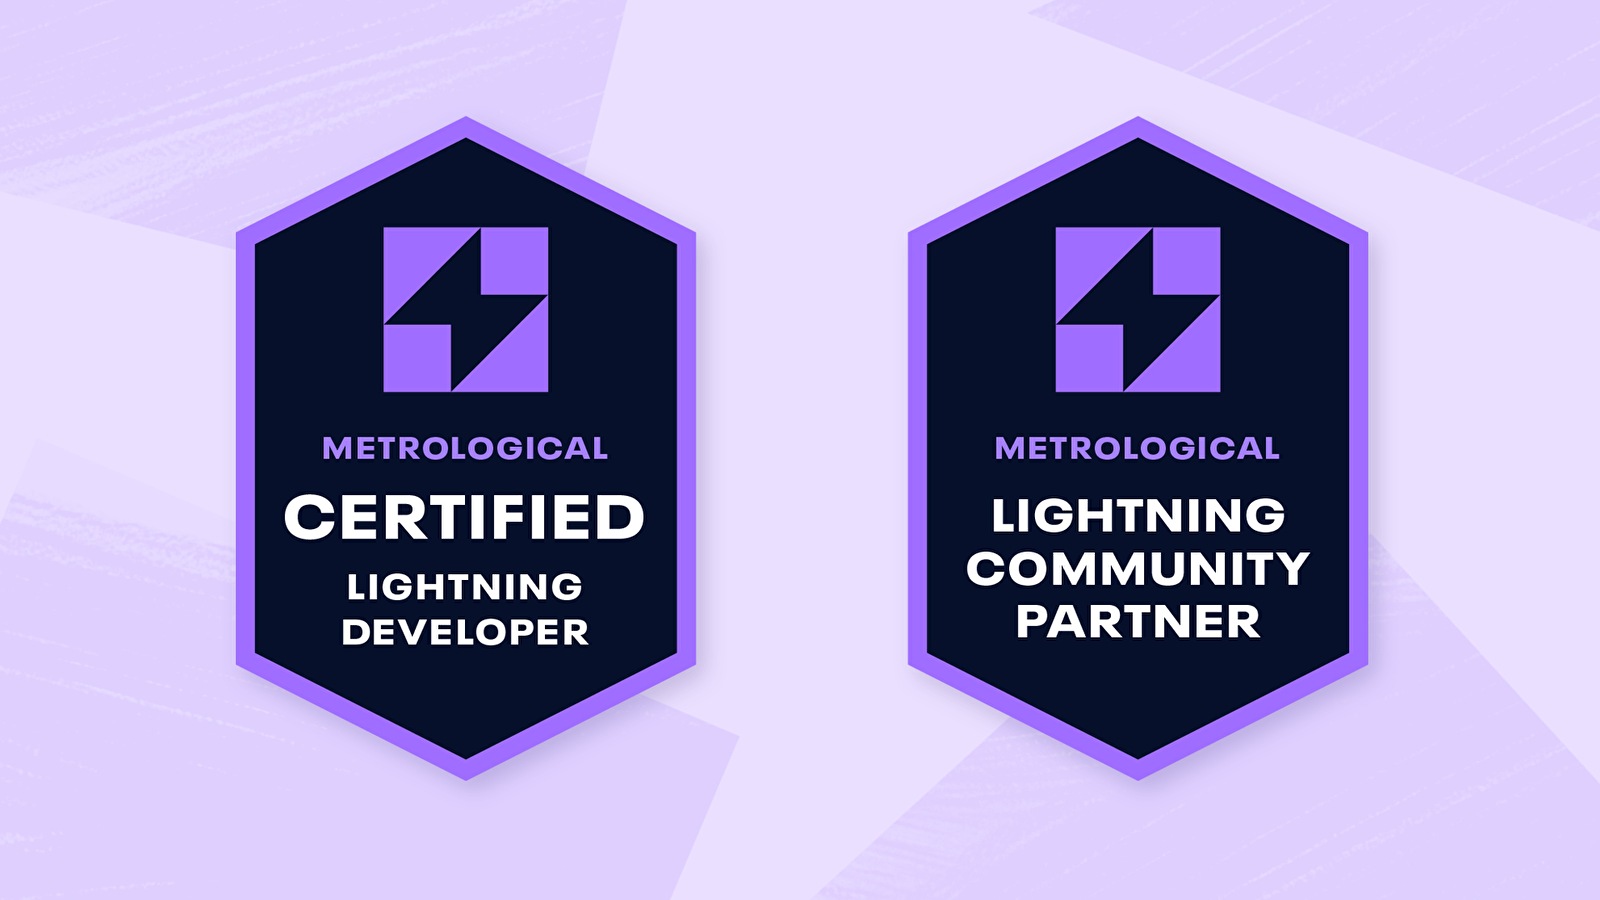 Metrological's Lightning Partner Program